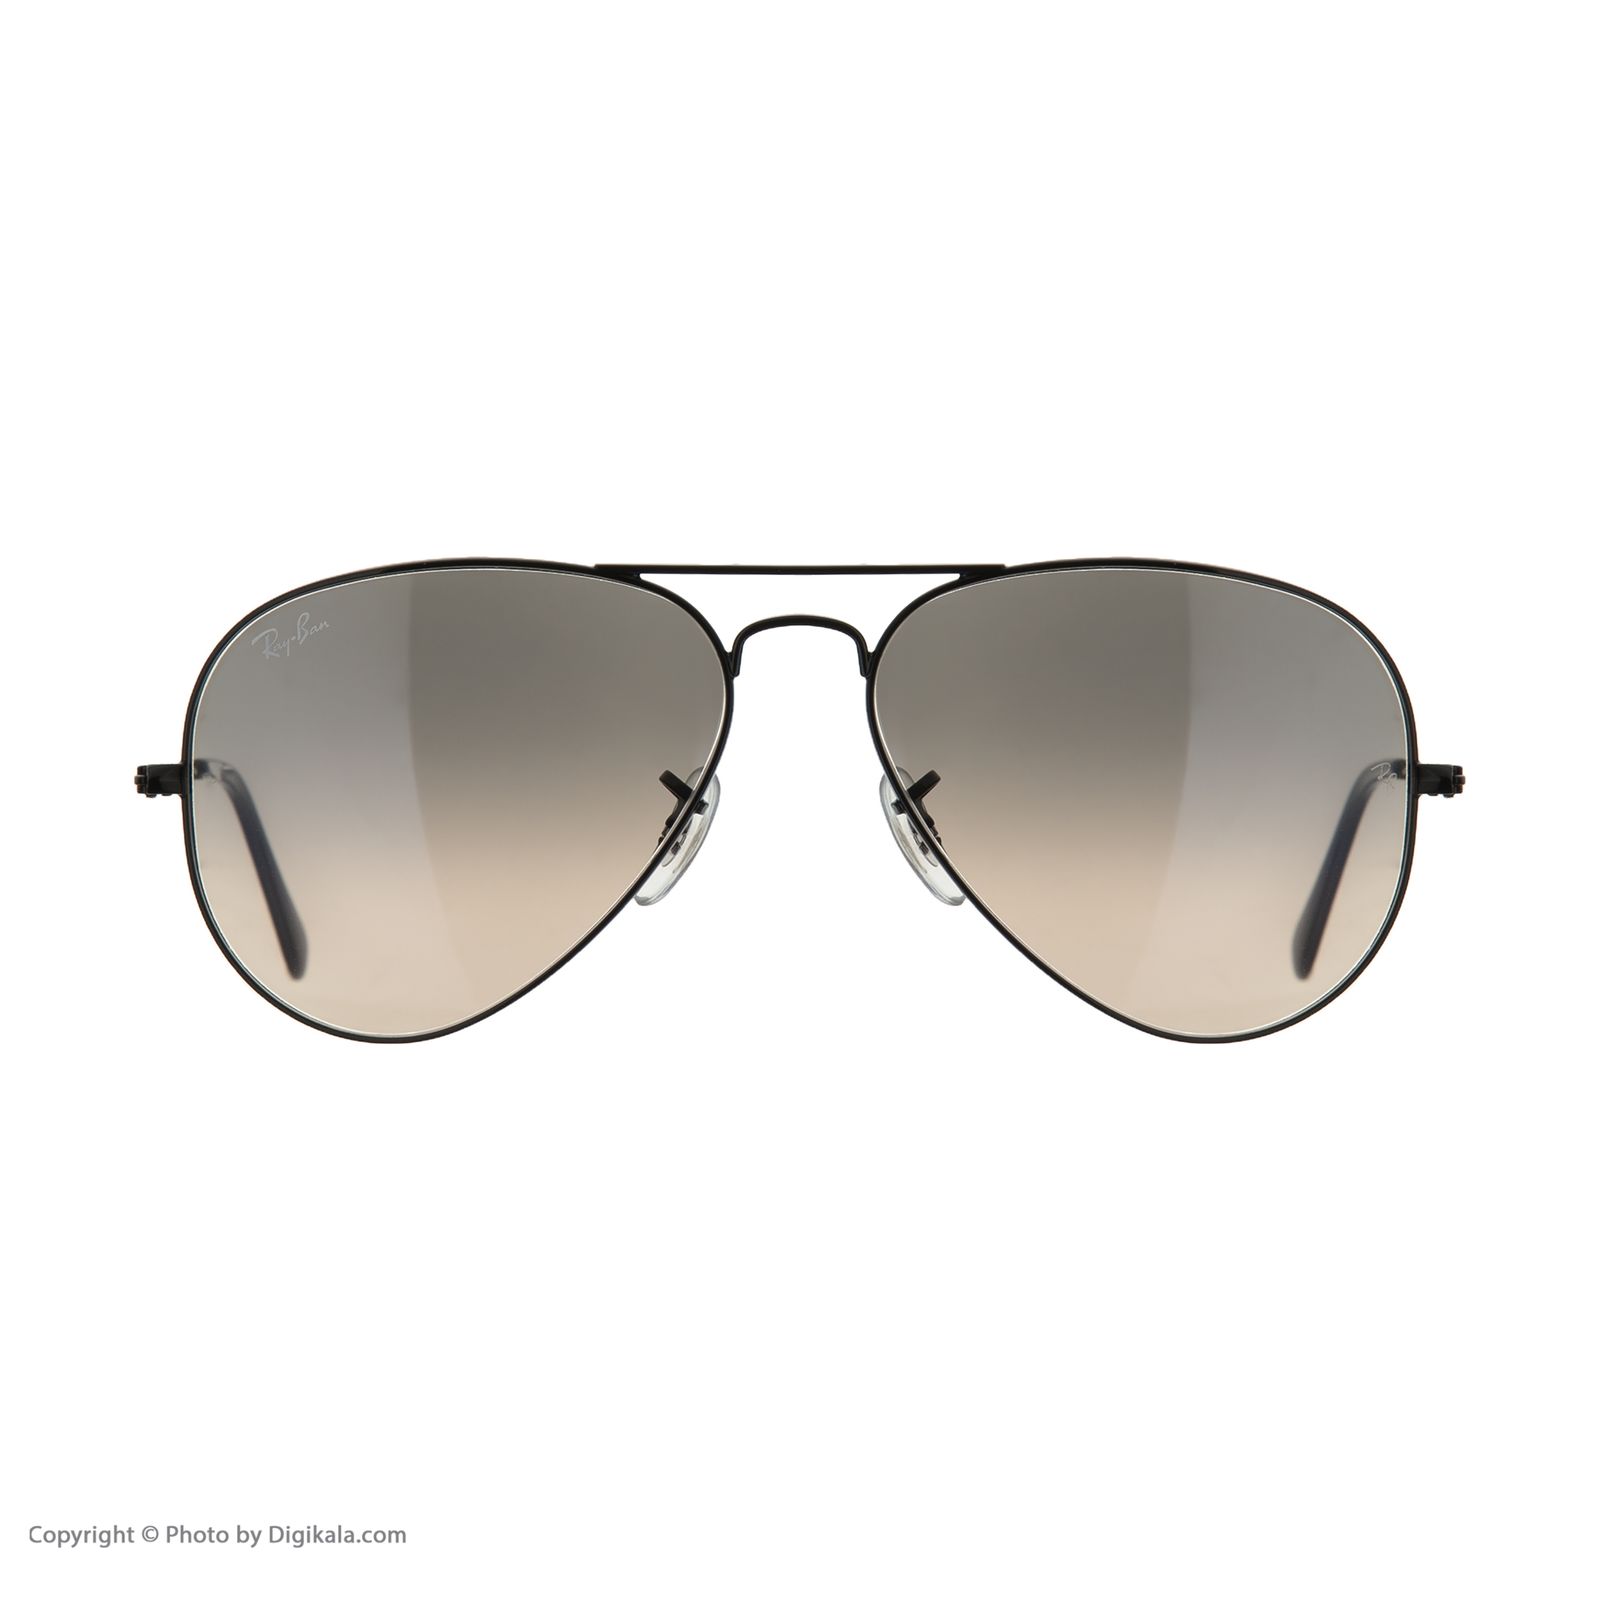 عینک آفتابی ری بن مدل 3025 002/32-58 -  - 2